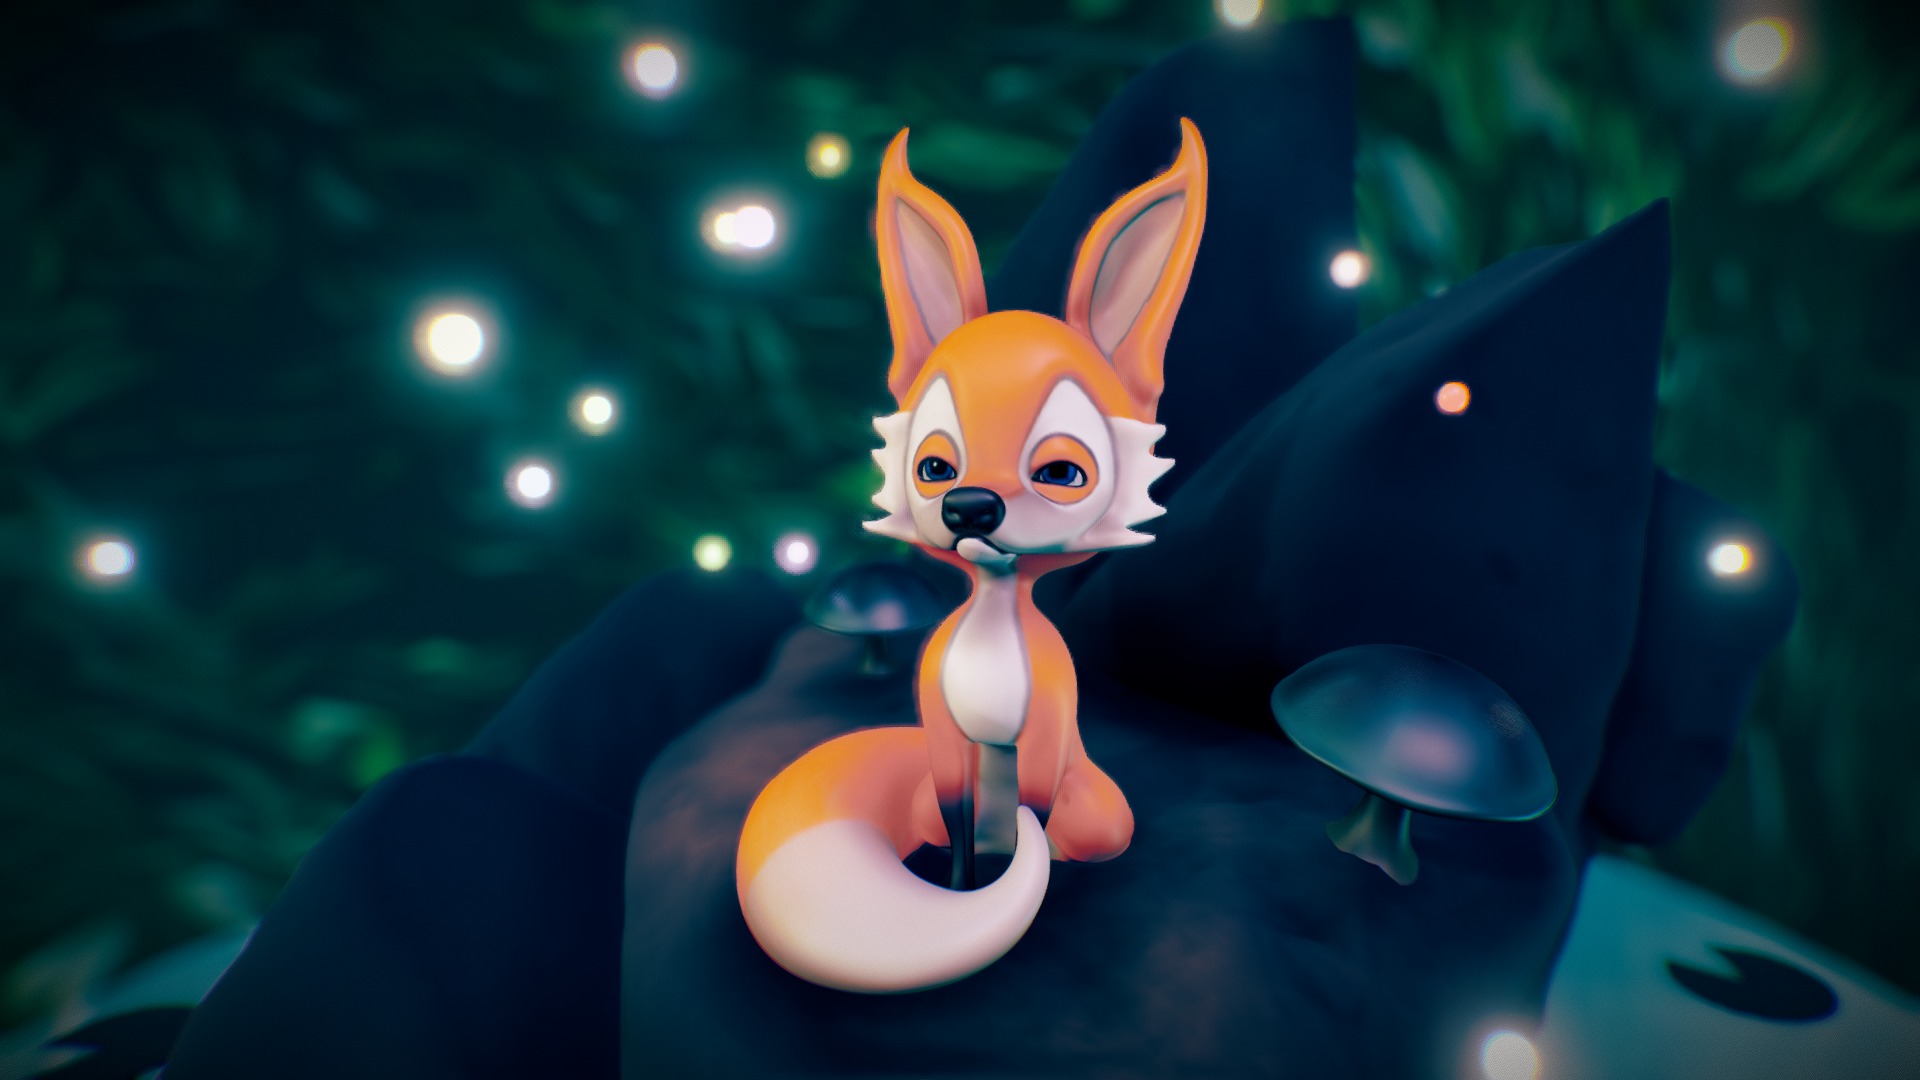 Fox Scene
Fox character based in ilustration
Zbrush, cinema 4d and substance painter - Fox Scene - 3D model by dsv86 3d model